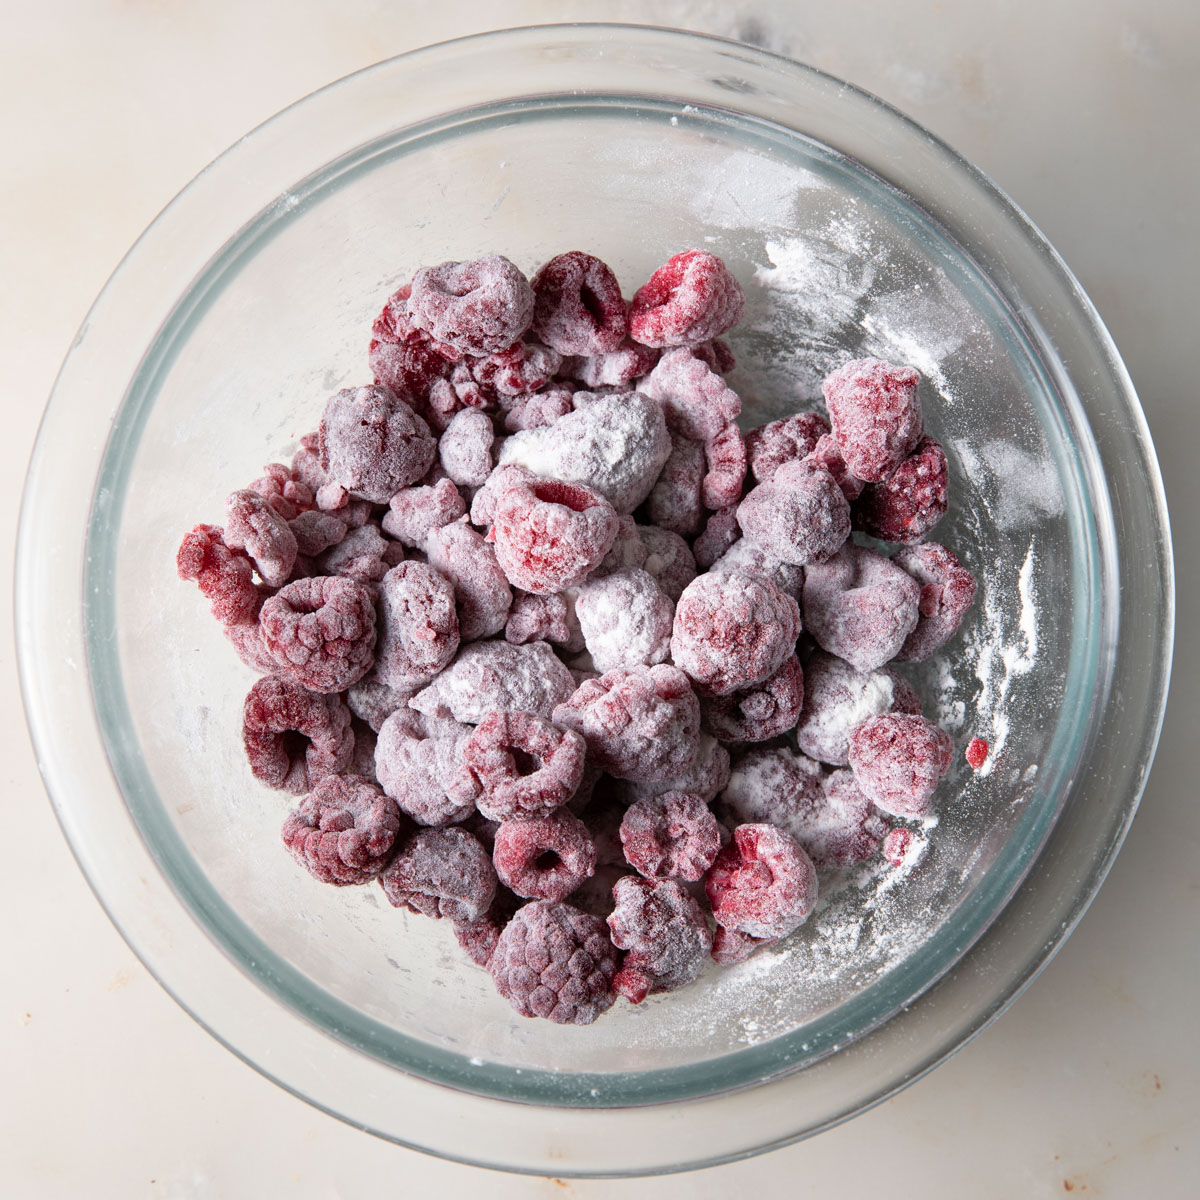 Tossed frozen raspberries with flour